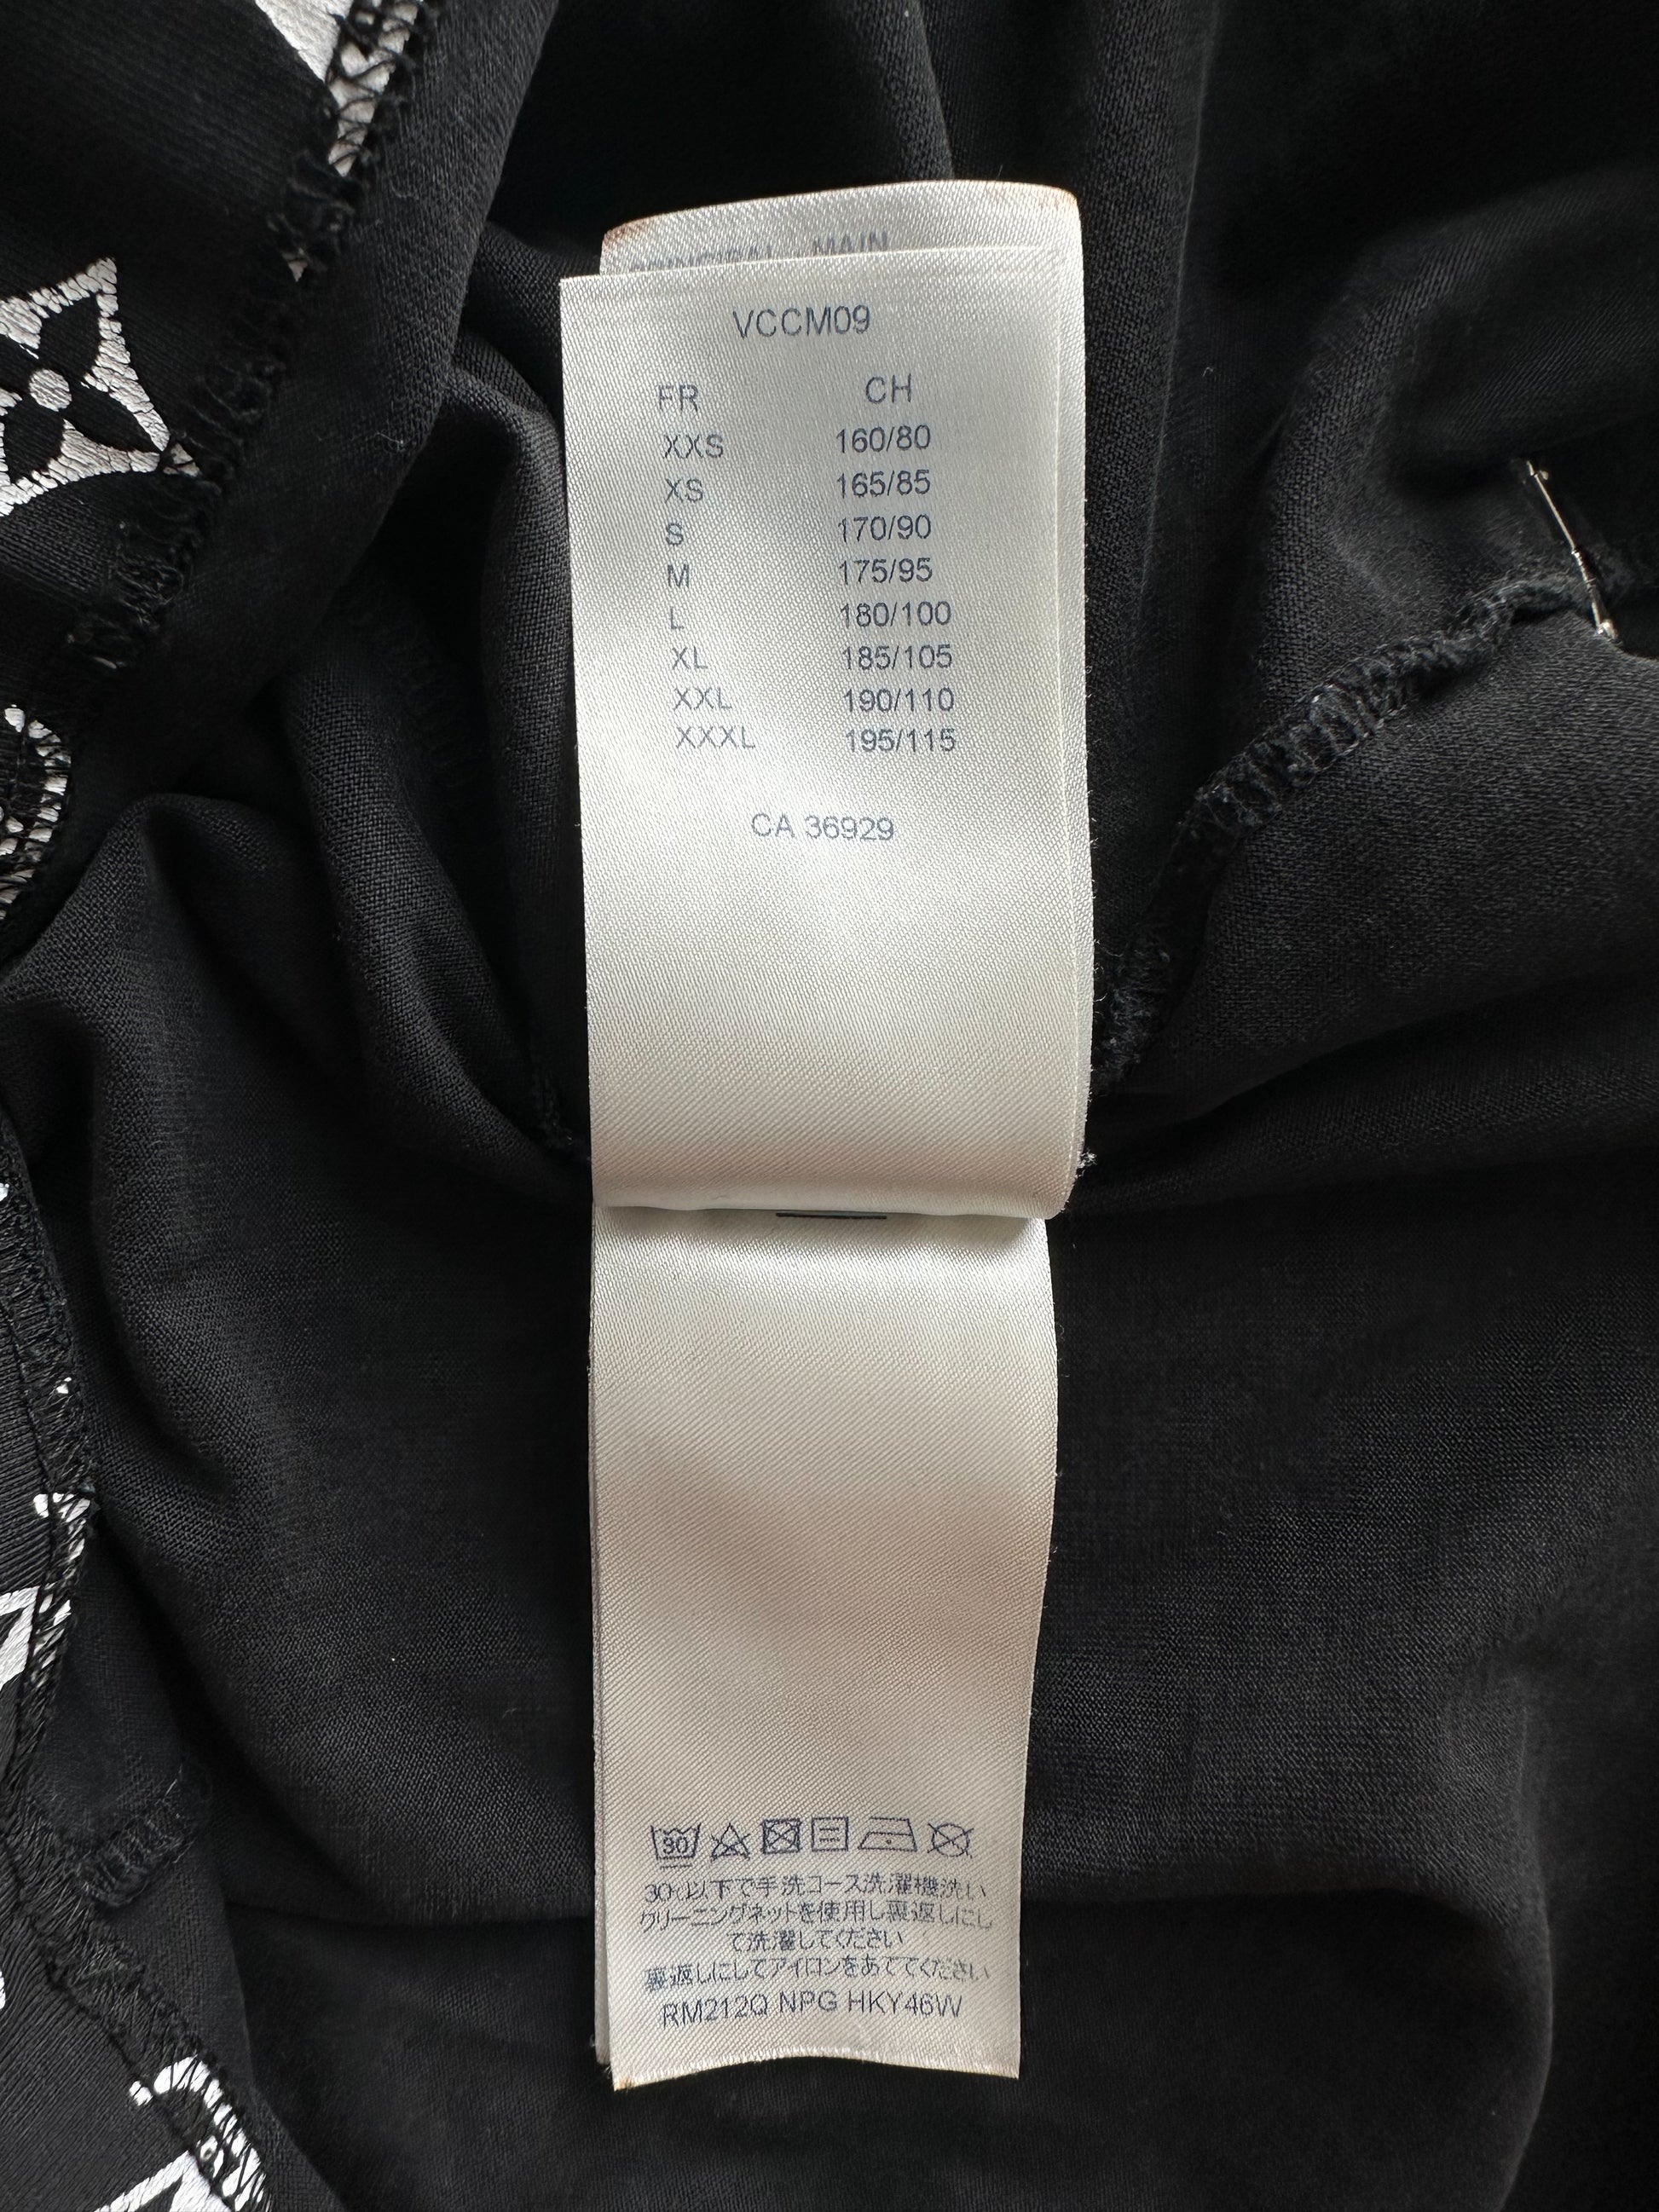 Louis Vuitton Monogram Gradient T-Shirt